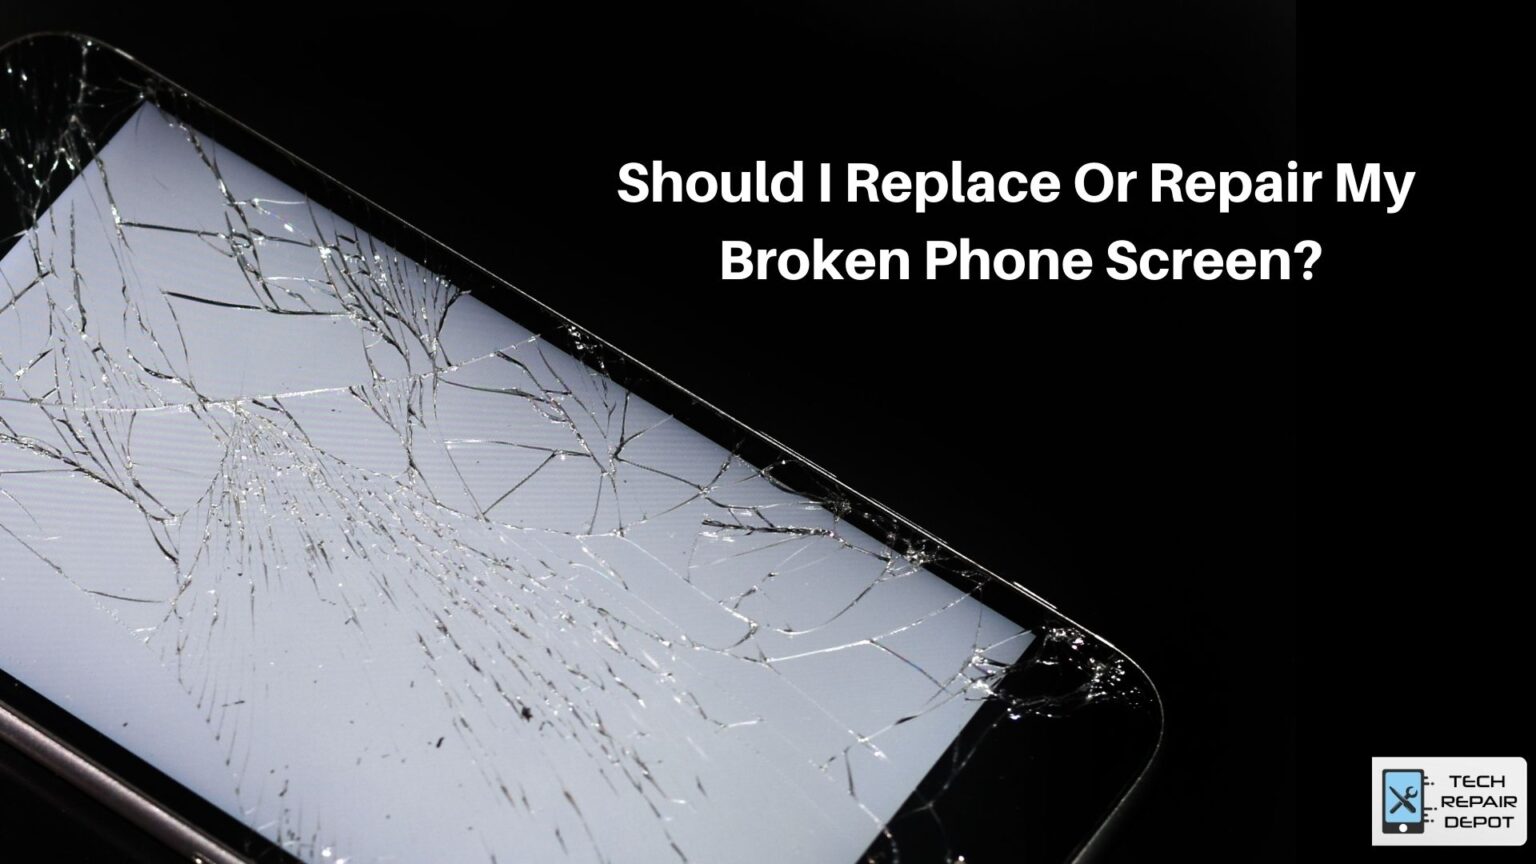 Should I Replace Or Repair My Broken Phone Screen?